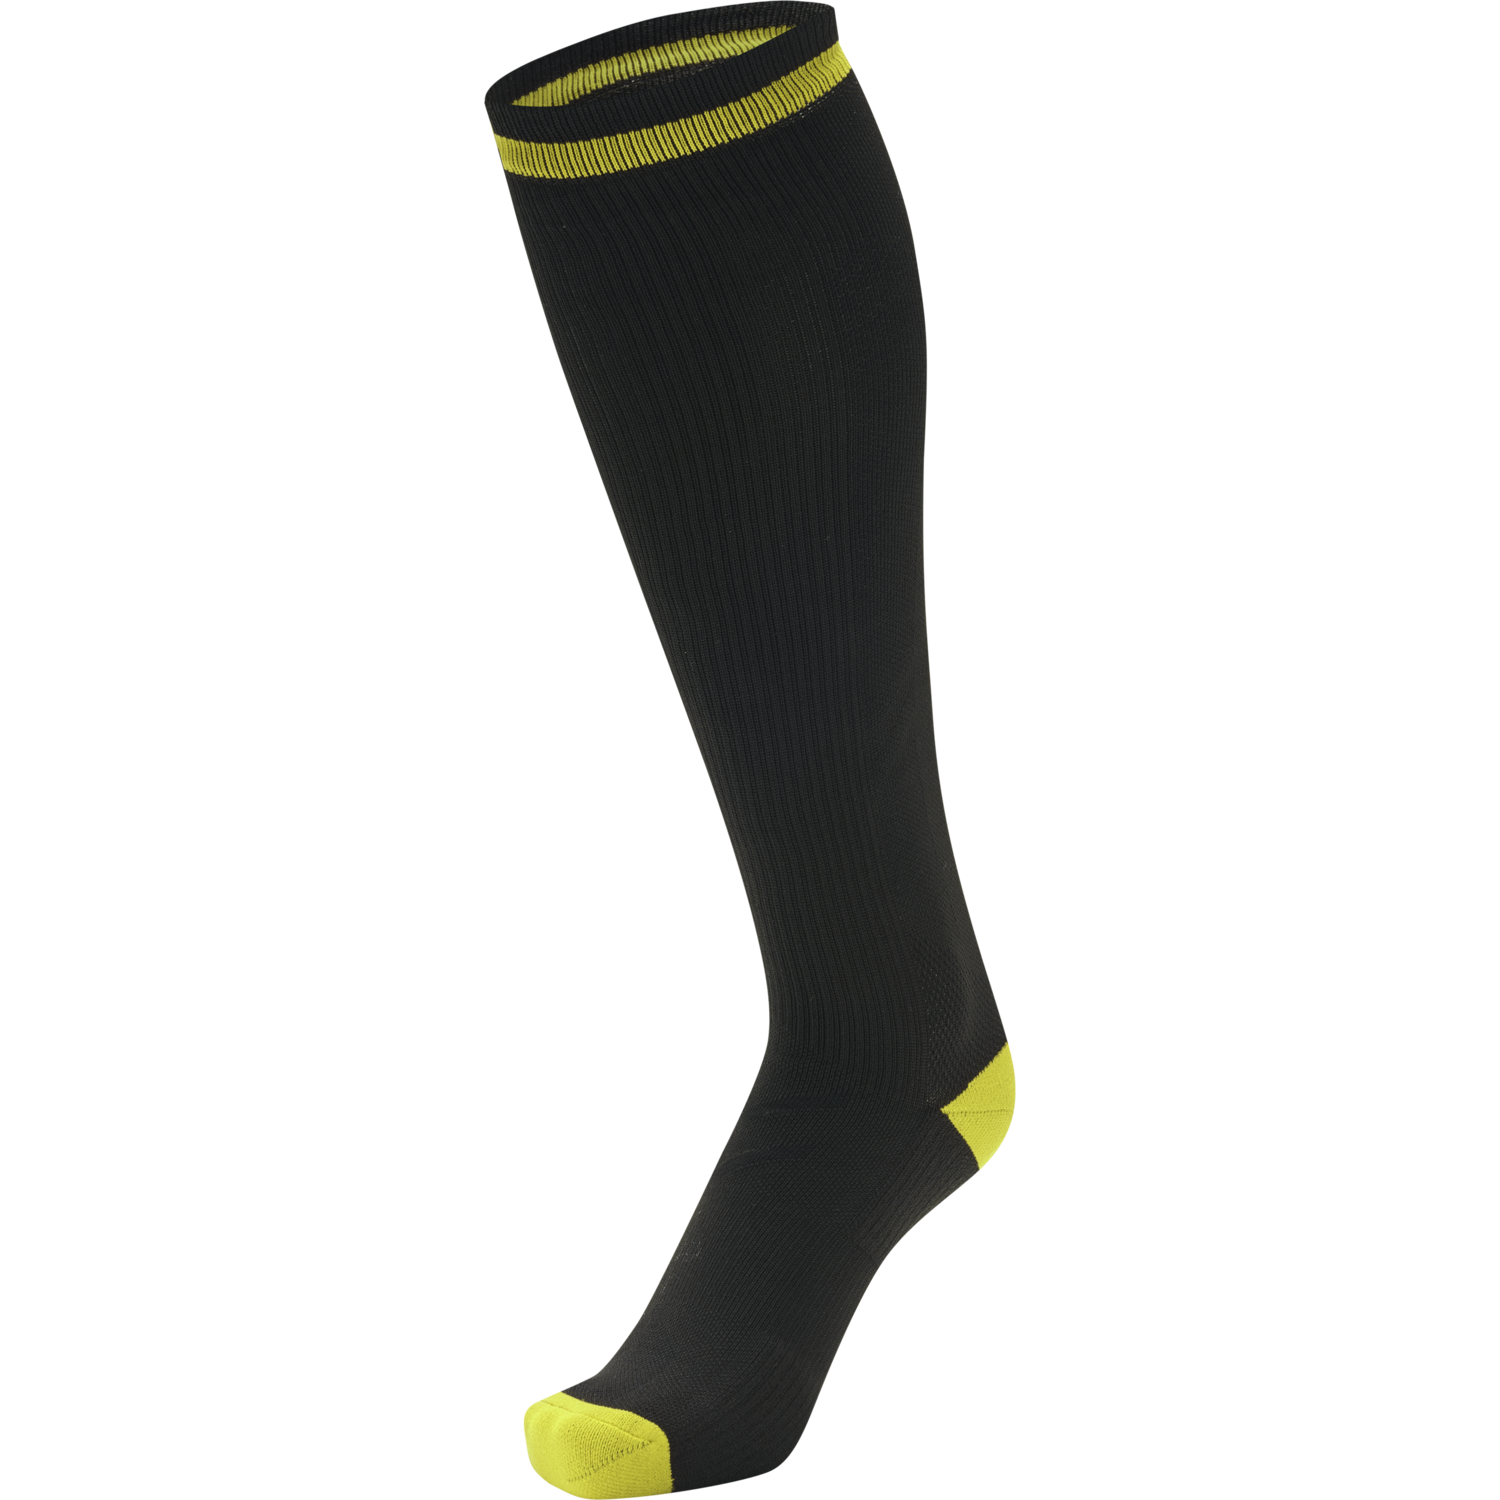 Yellow/black 45 socks